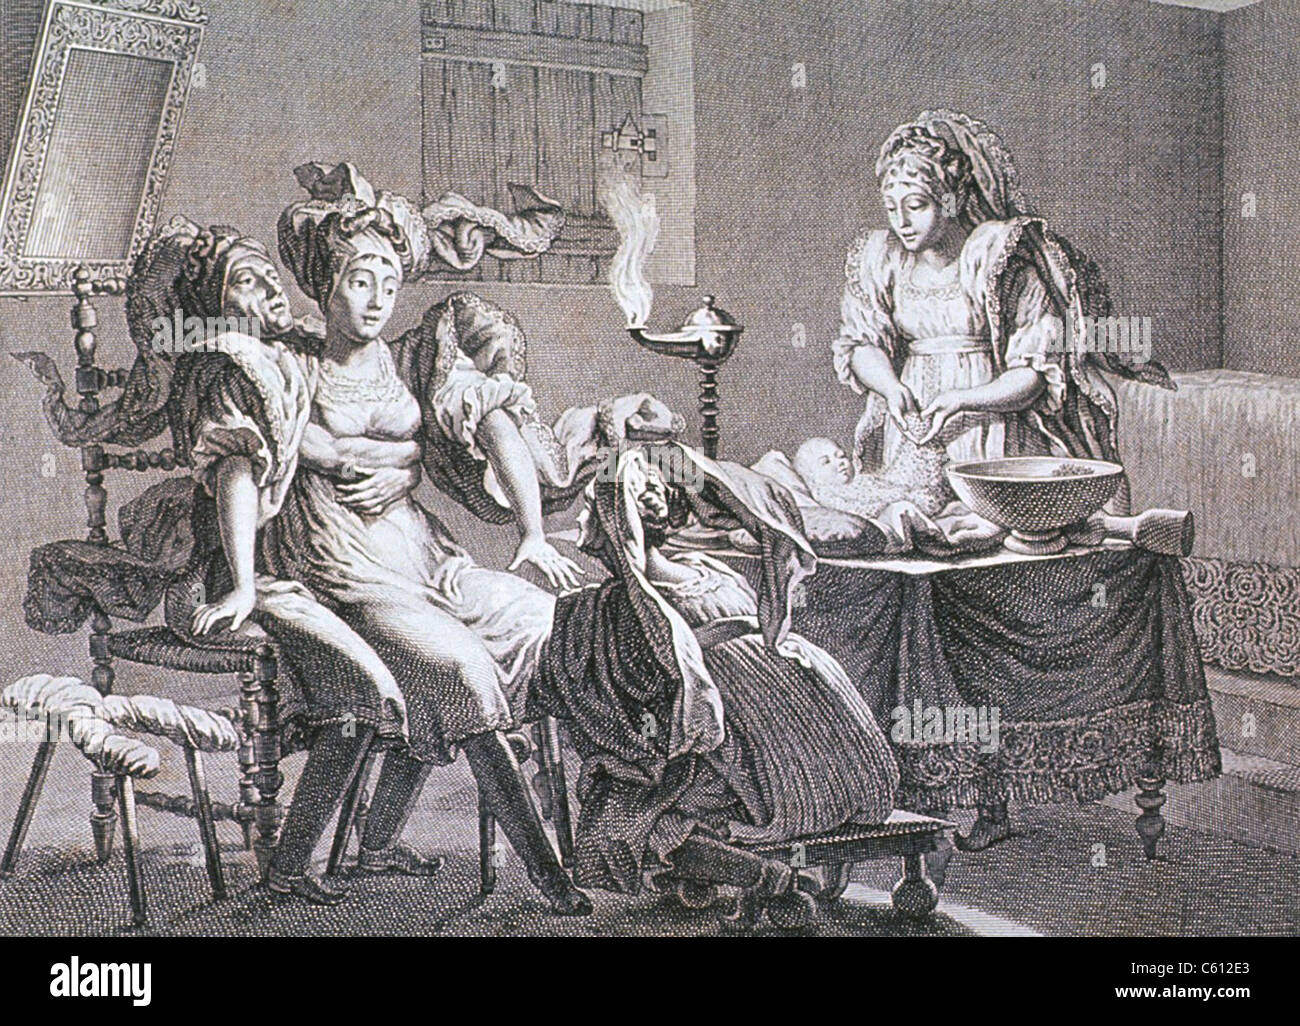 Une femme a donné naissance à l'aide de trois sages-femmes. Elle est assise sur les genoux de quelqu'un qui a ses bras autour d'elle ; le second, assis sur un tabouret bas, atteint sous sa robe ; et la troisième est debout à une table avec un nouveau-né. La gravure française, ca. 1800. Banque D'Images